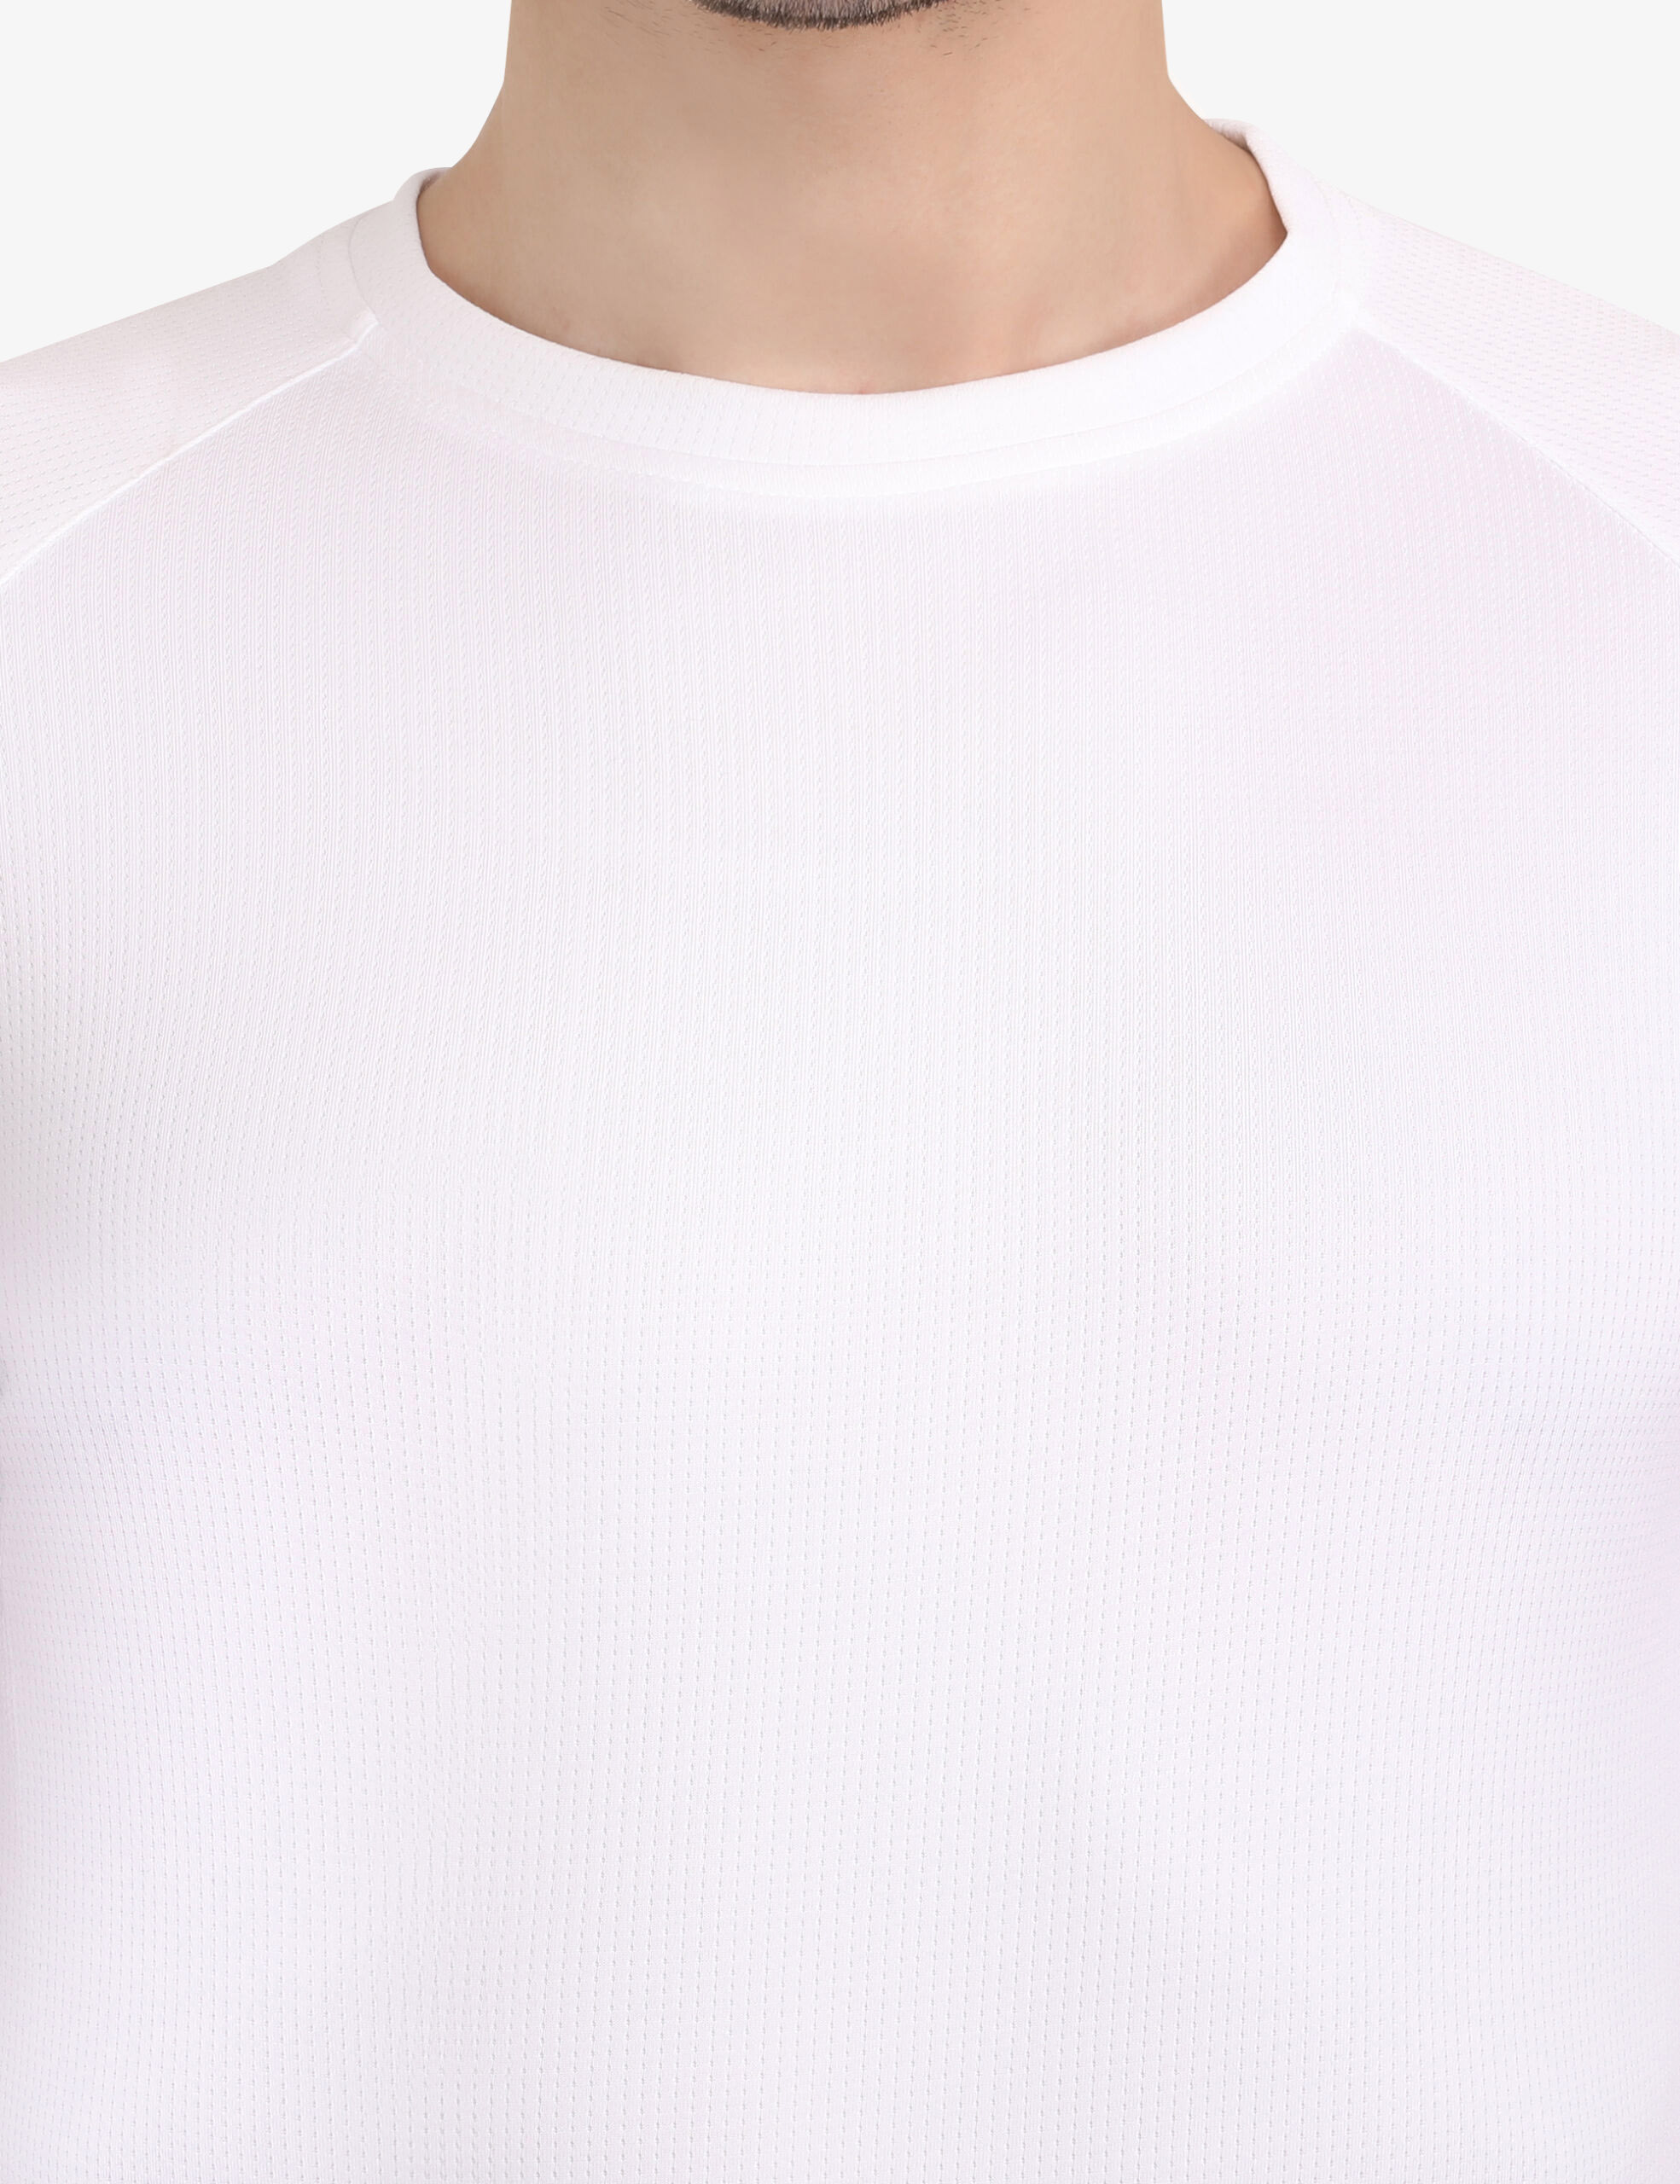 ASI Chrome T-Shirt White Color